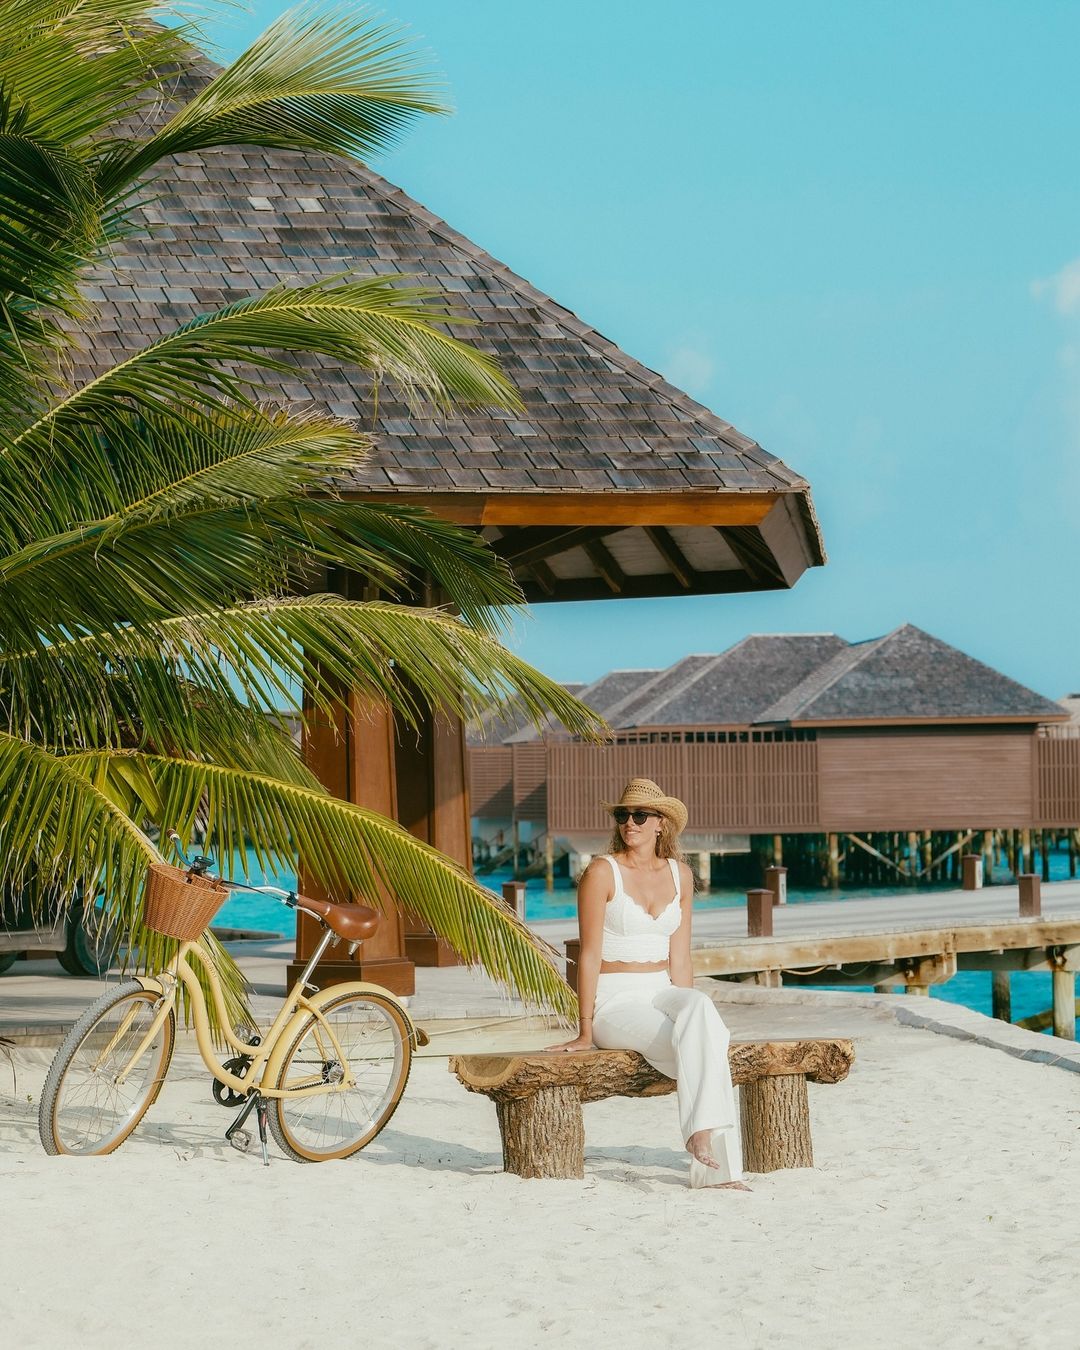 Maldives Luxury Private Resort - 5 Star All Inclusive Maldives Resort